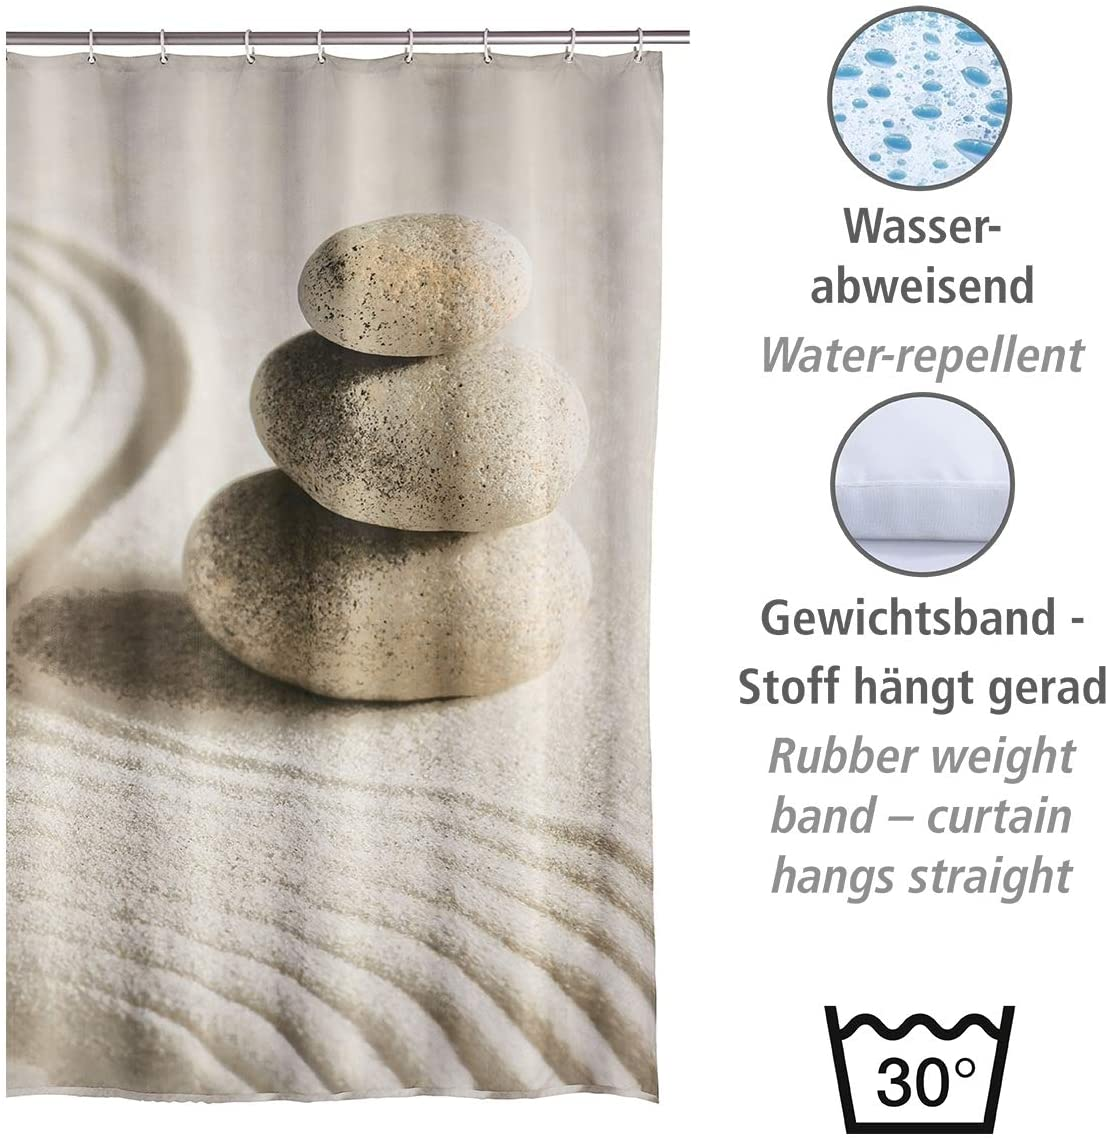 Duschvorhang Sand & Stone, Textil-Vorhang fürs Badezimmer, mit Ringen zur Befestigung an der Duschstange, waschbar, wasserabweisend, 180 x 200 cm